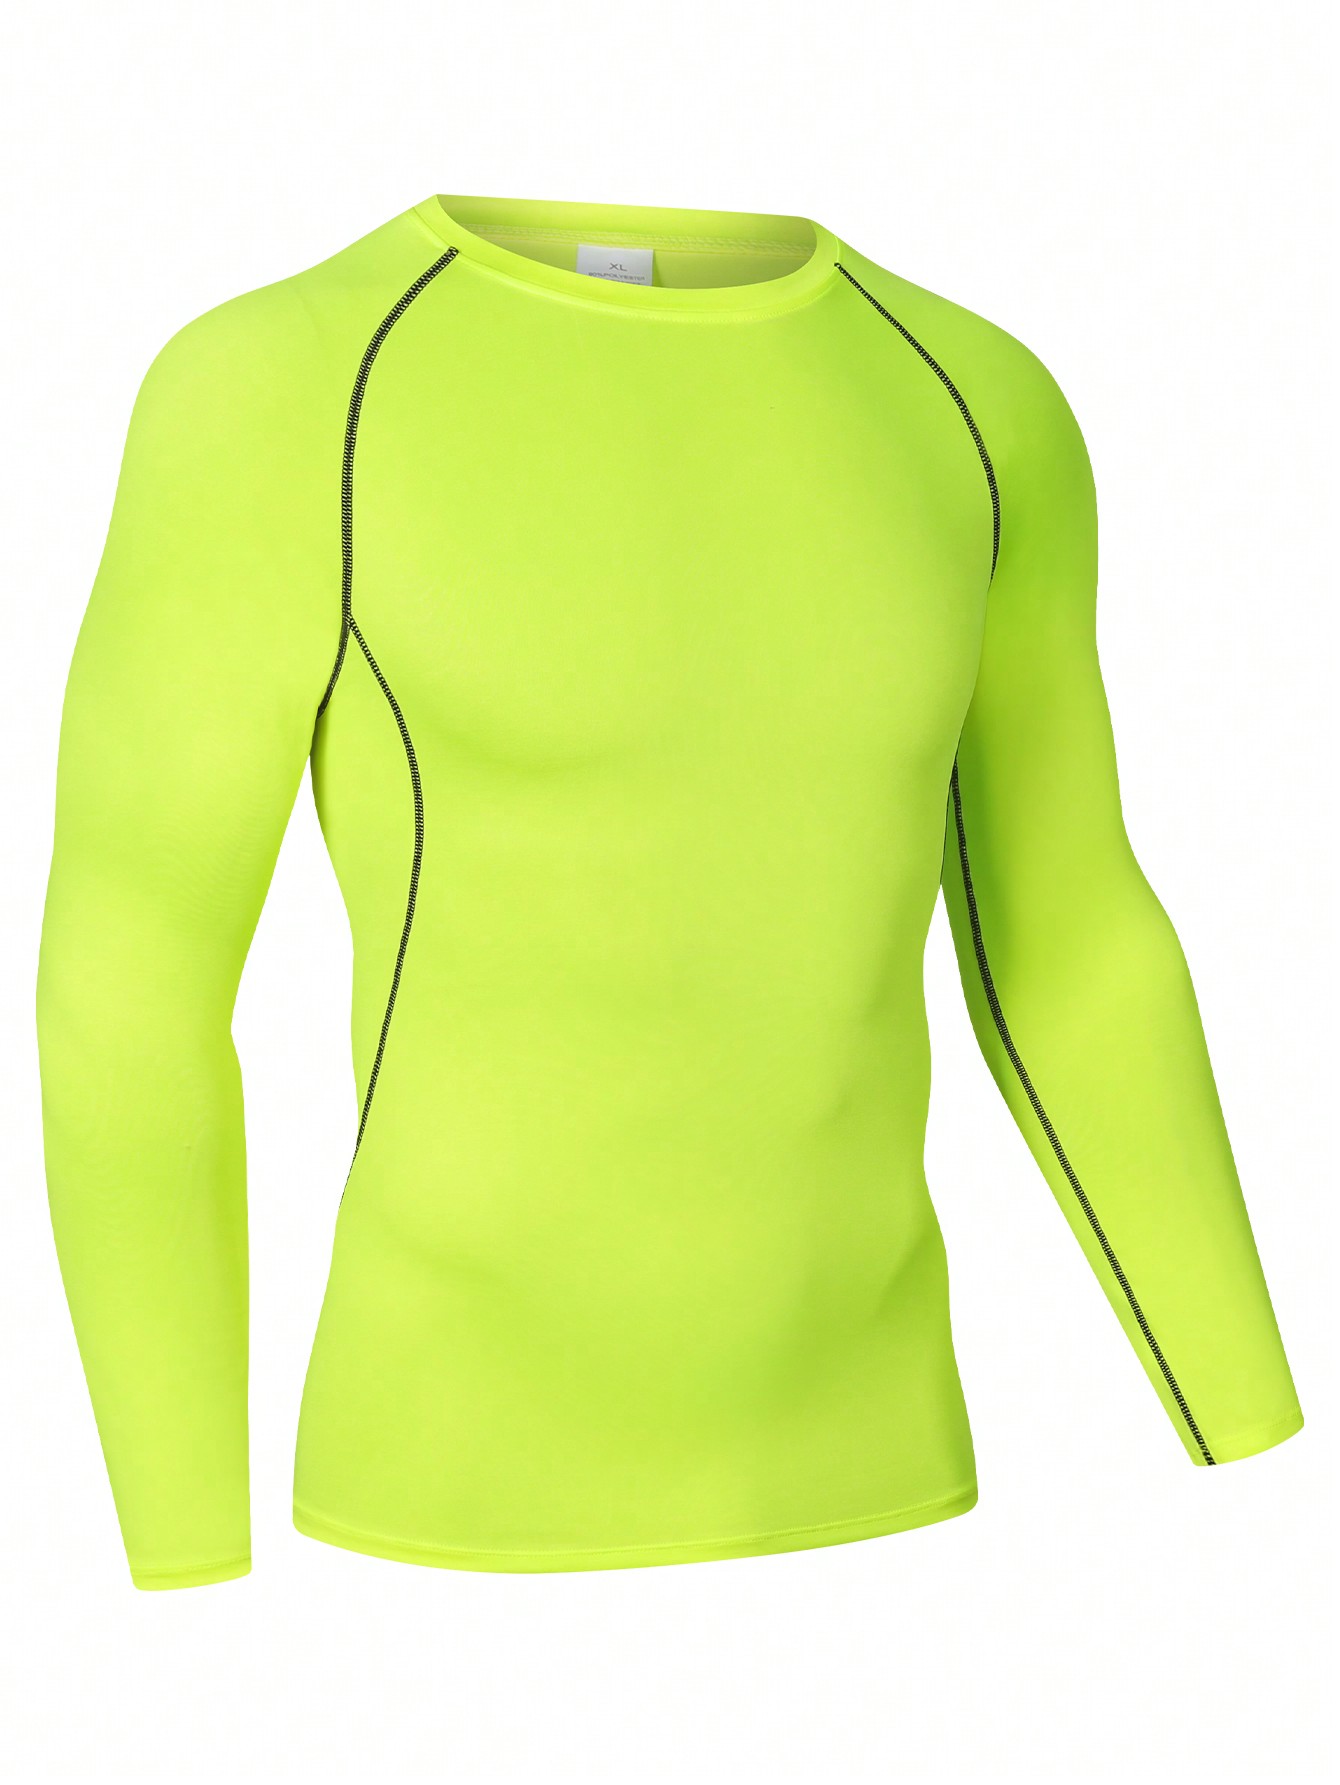 Мужская эластичная компрессионная рубашка для фитнеса с длинными рукавами, зеленый мужская футболка для спортзала футболка для фитнеса бодибилдинга тренировок мужская летняя спортивная футболка для бега мужская футбол